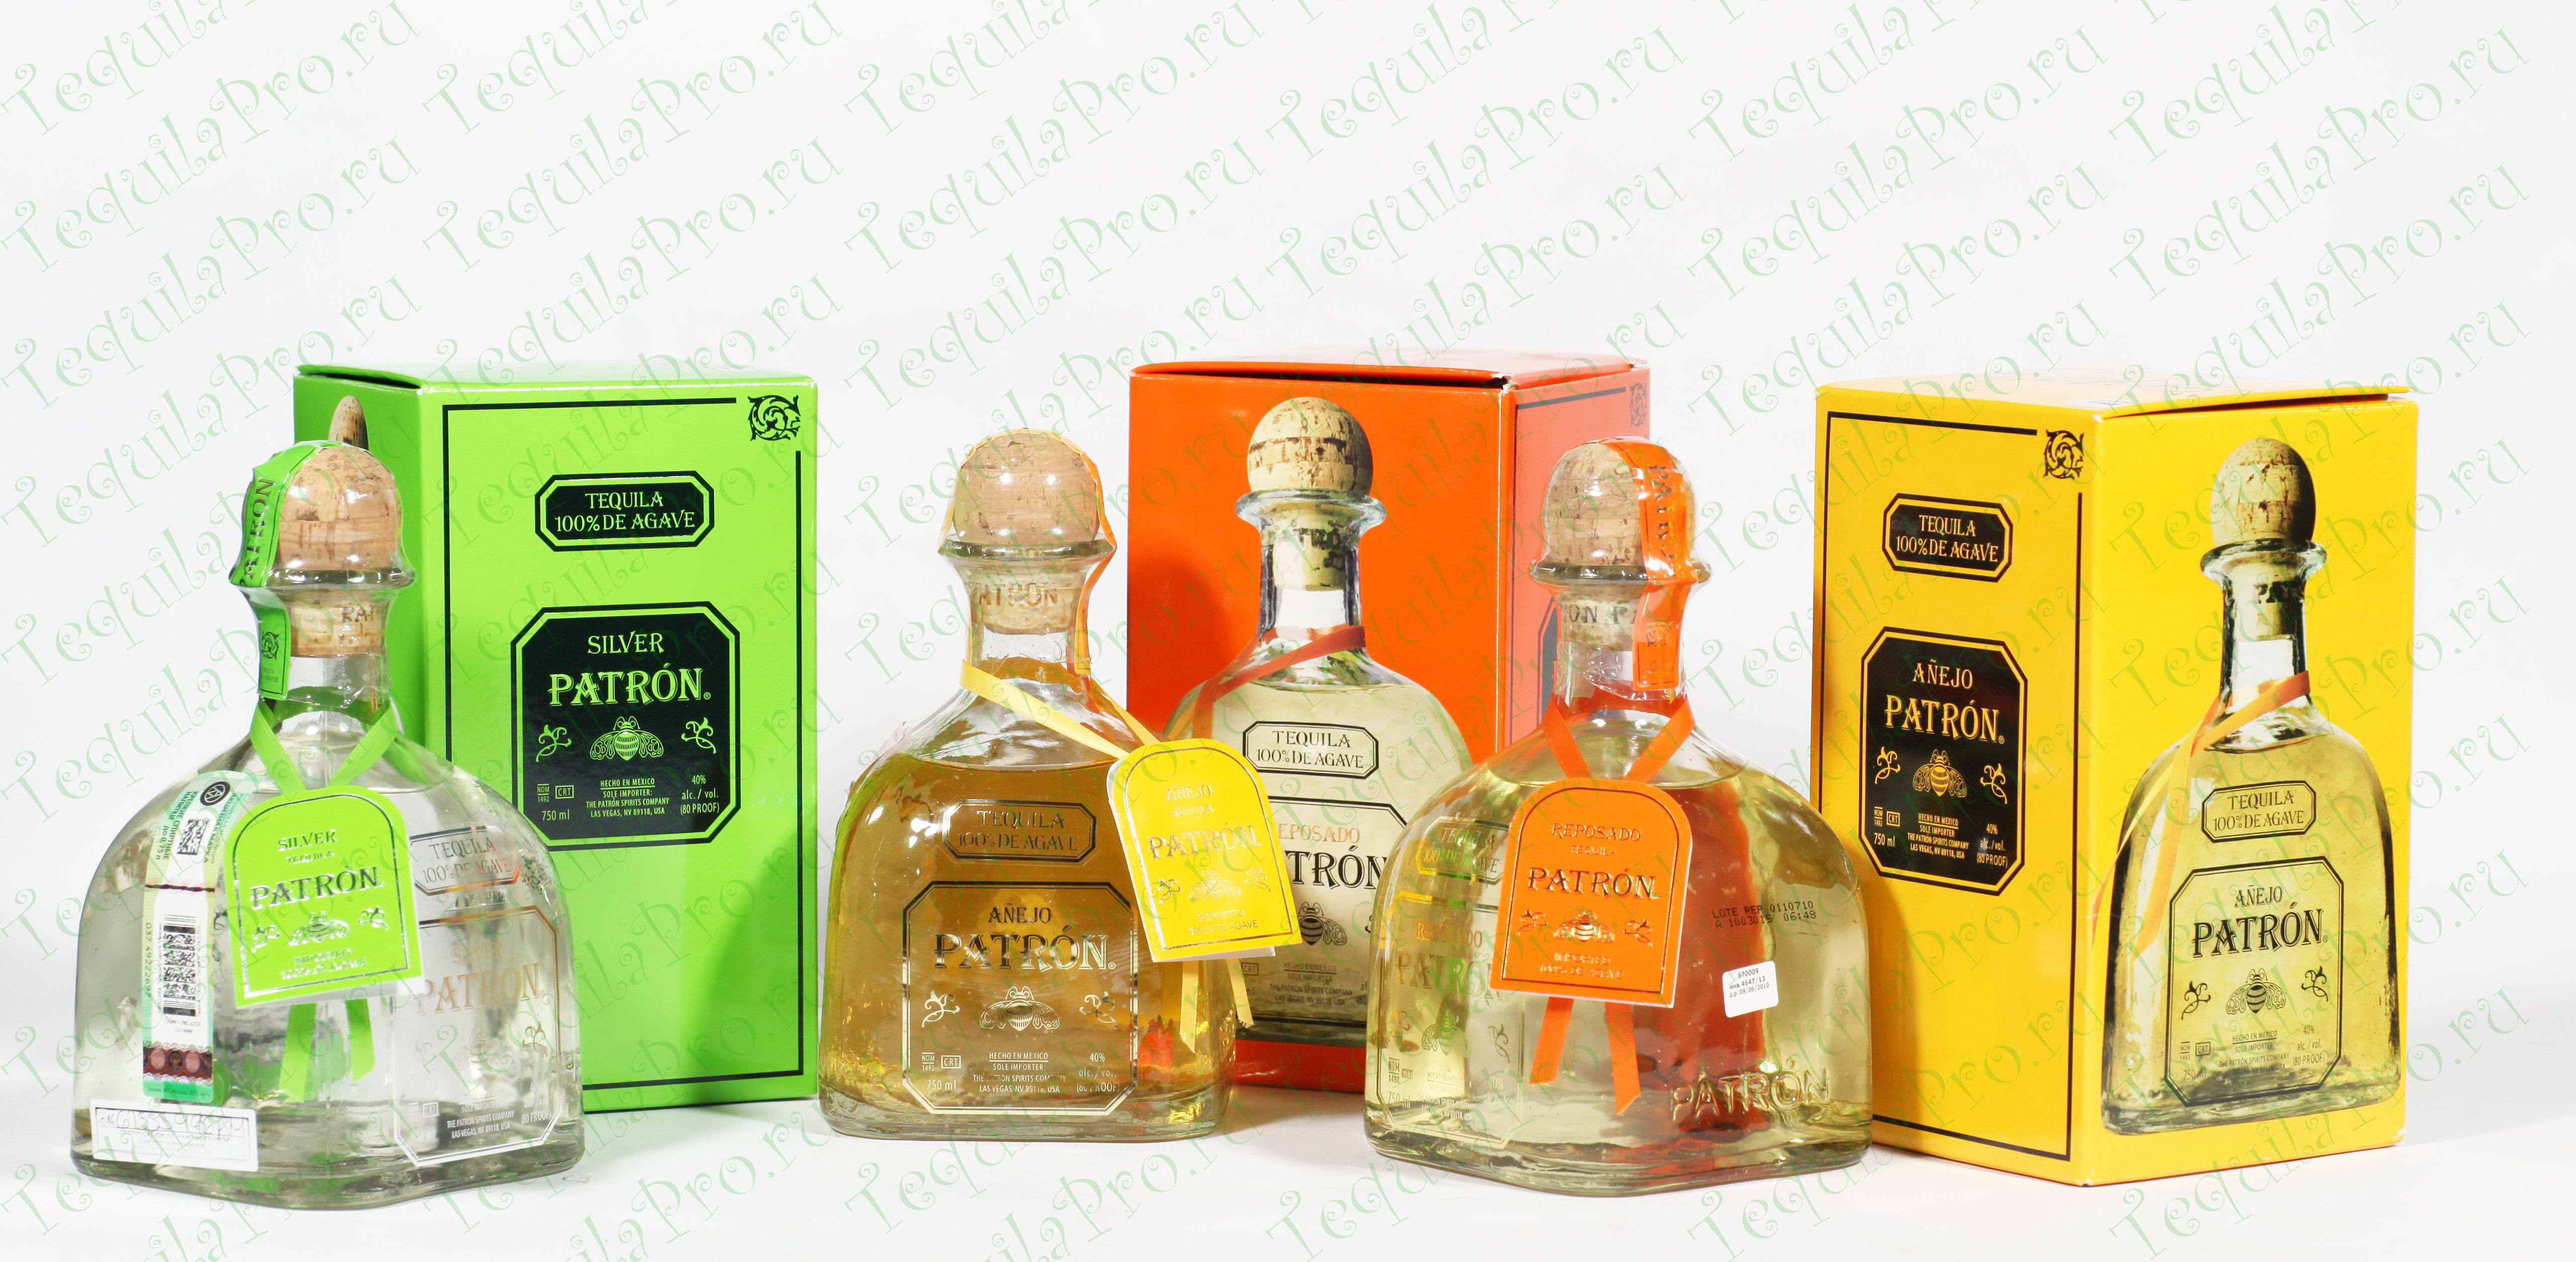 Дай текила. Tequila "patron Silver" 40 % 0.75 l. Tequila Anejo Silver. Текила патруль. Текила с цветочками.